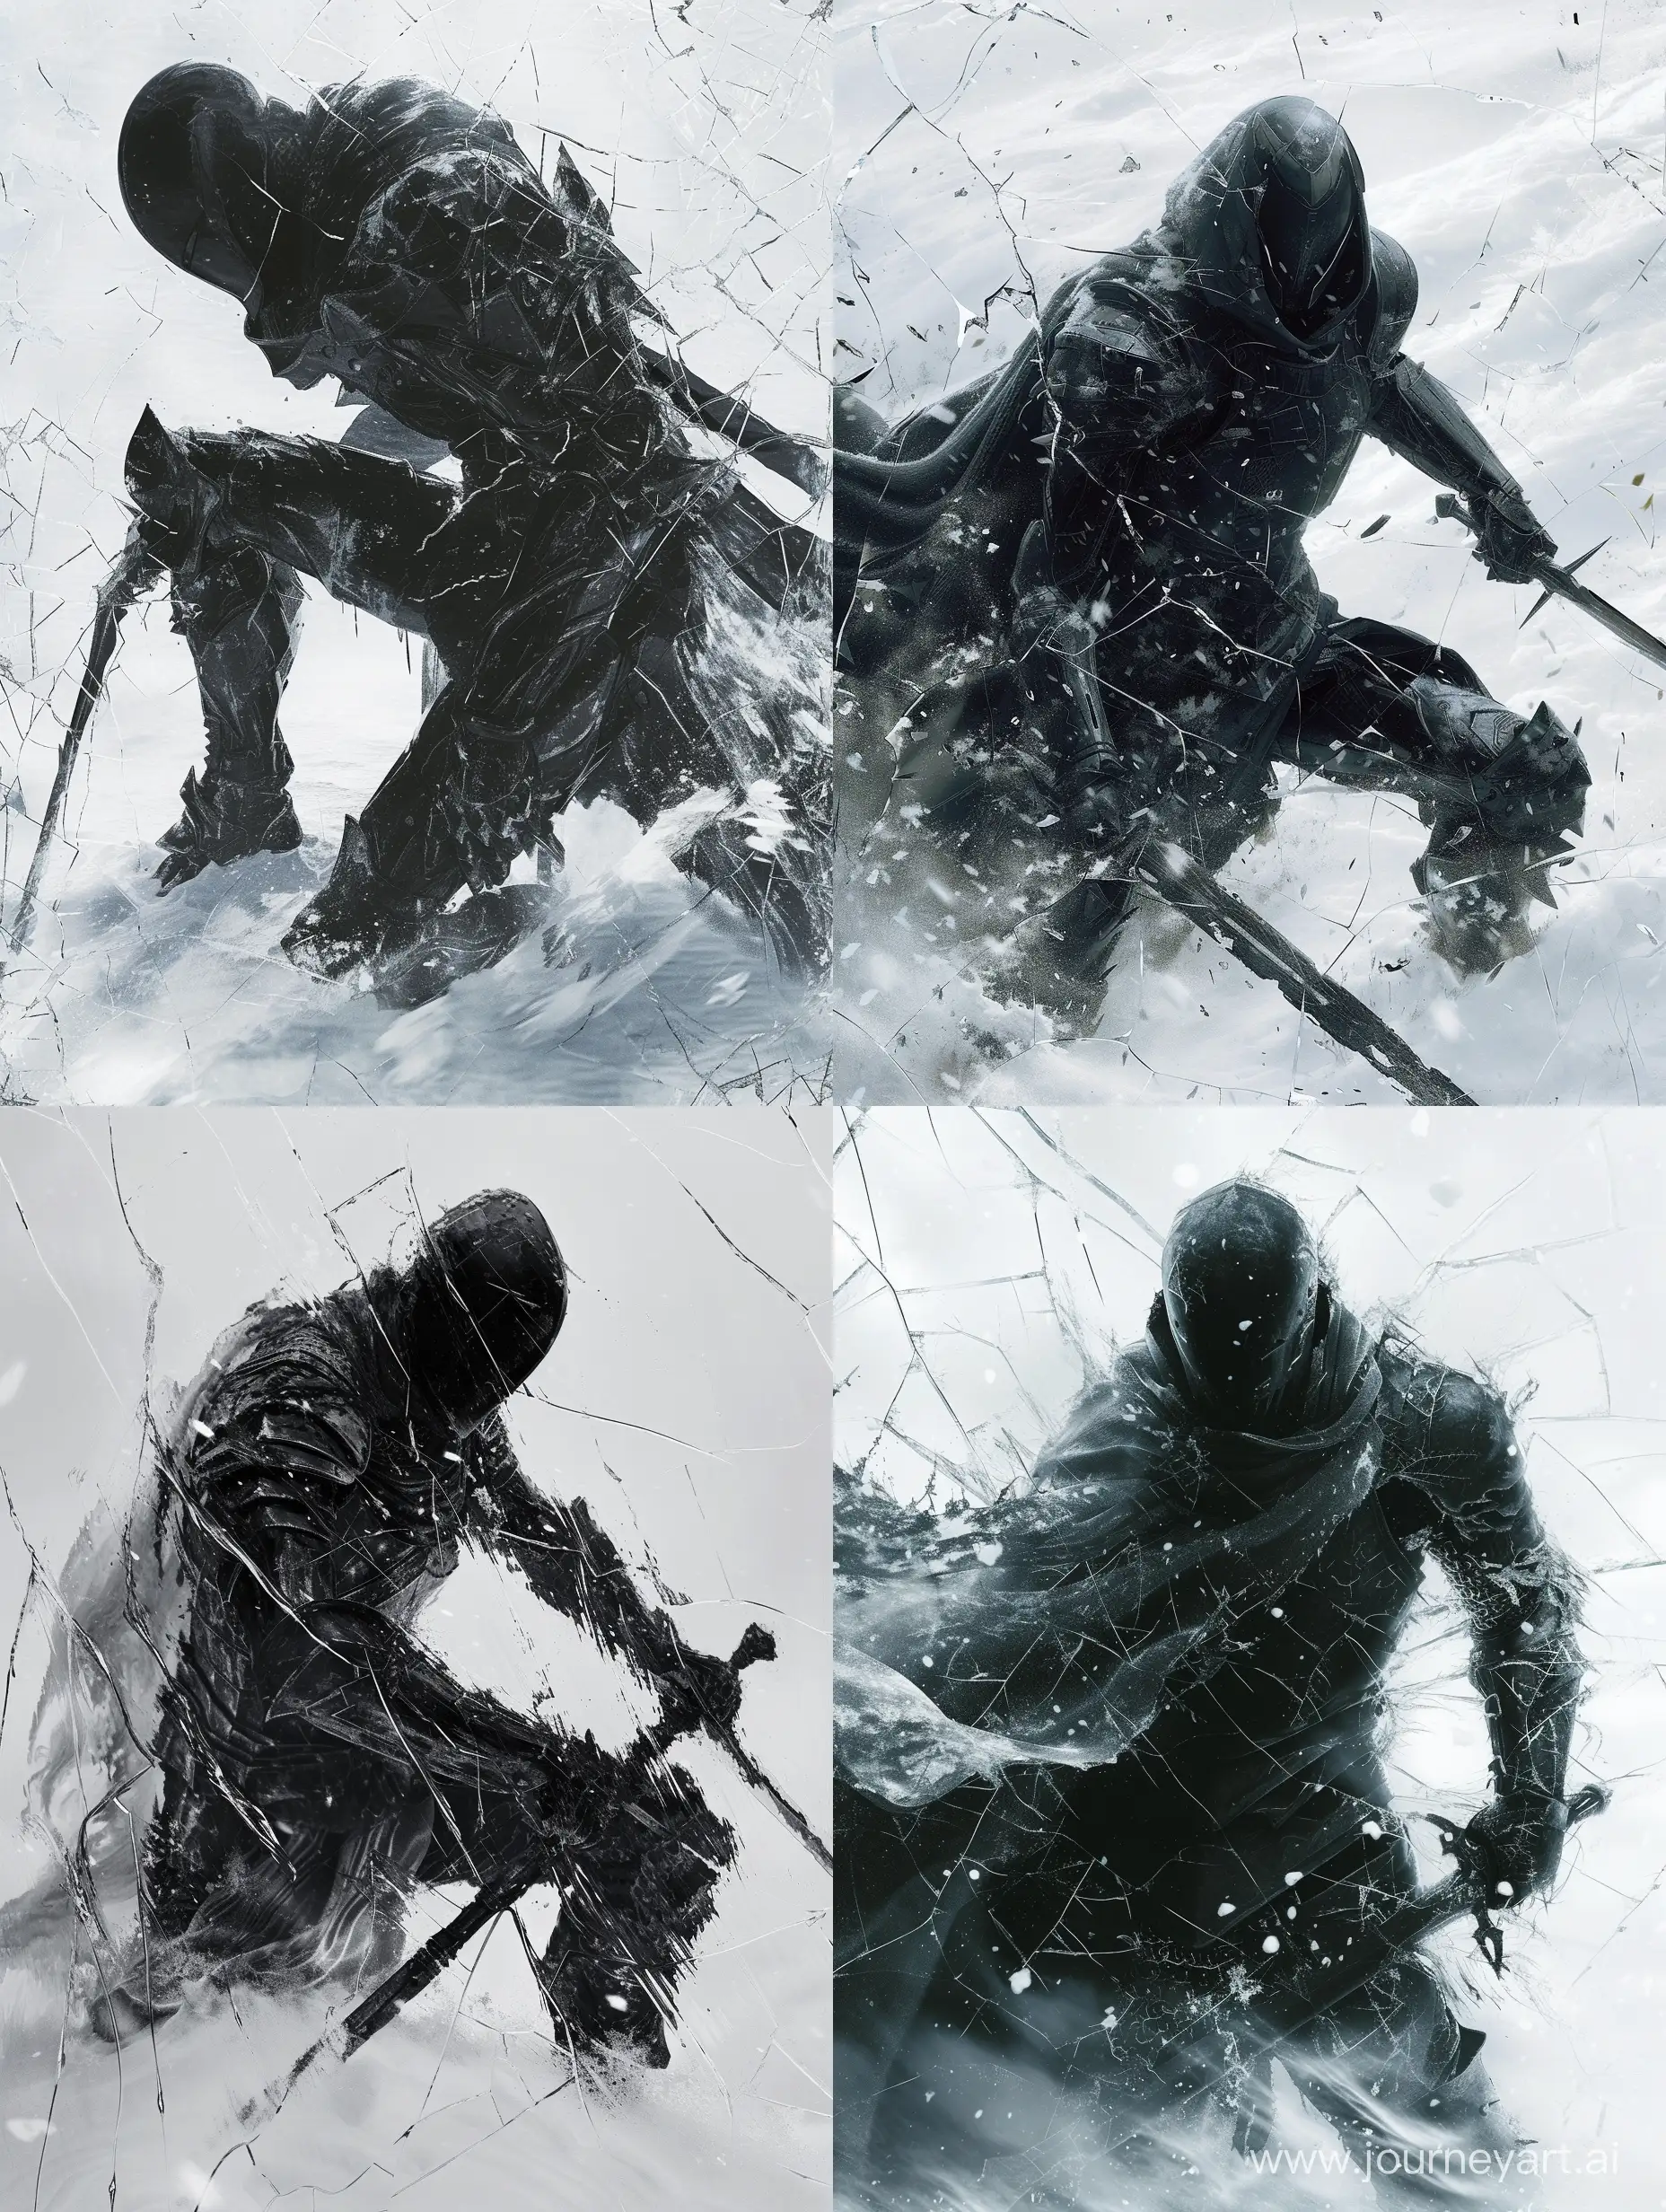 Epic-SciFi-Knight-Assassin-Album-Cover-in-a-Snowy-Dark-Souls-Style